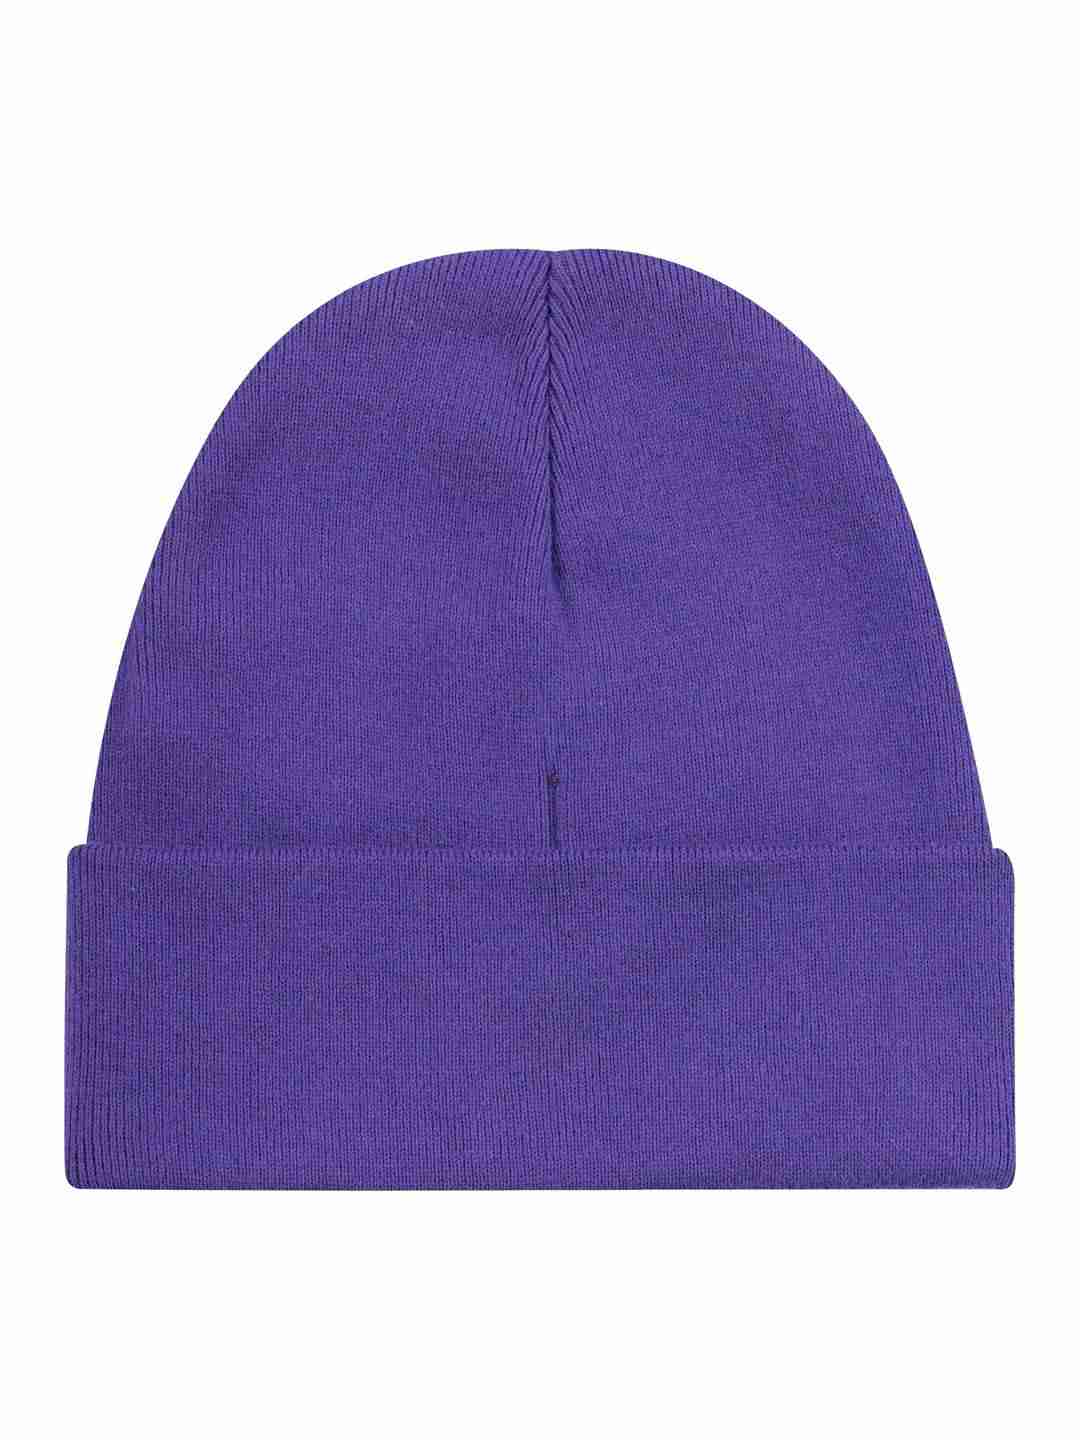 Beanie Knitted rib deep purple von KnowledgeCotton Apparel